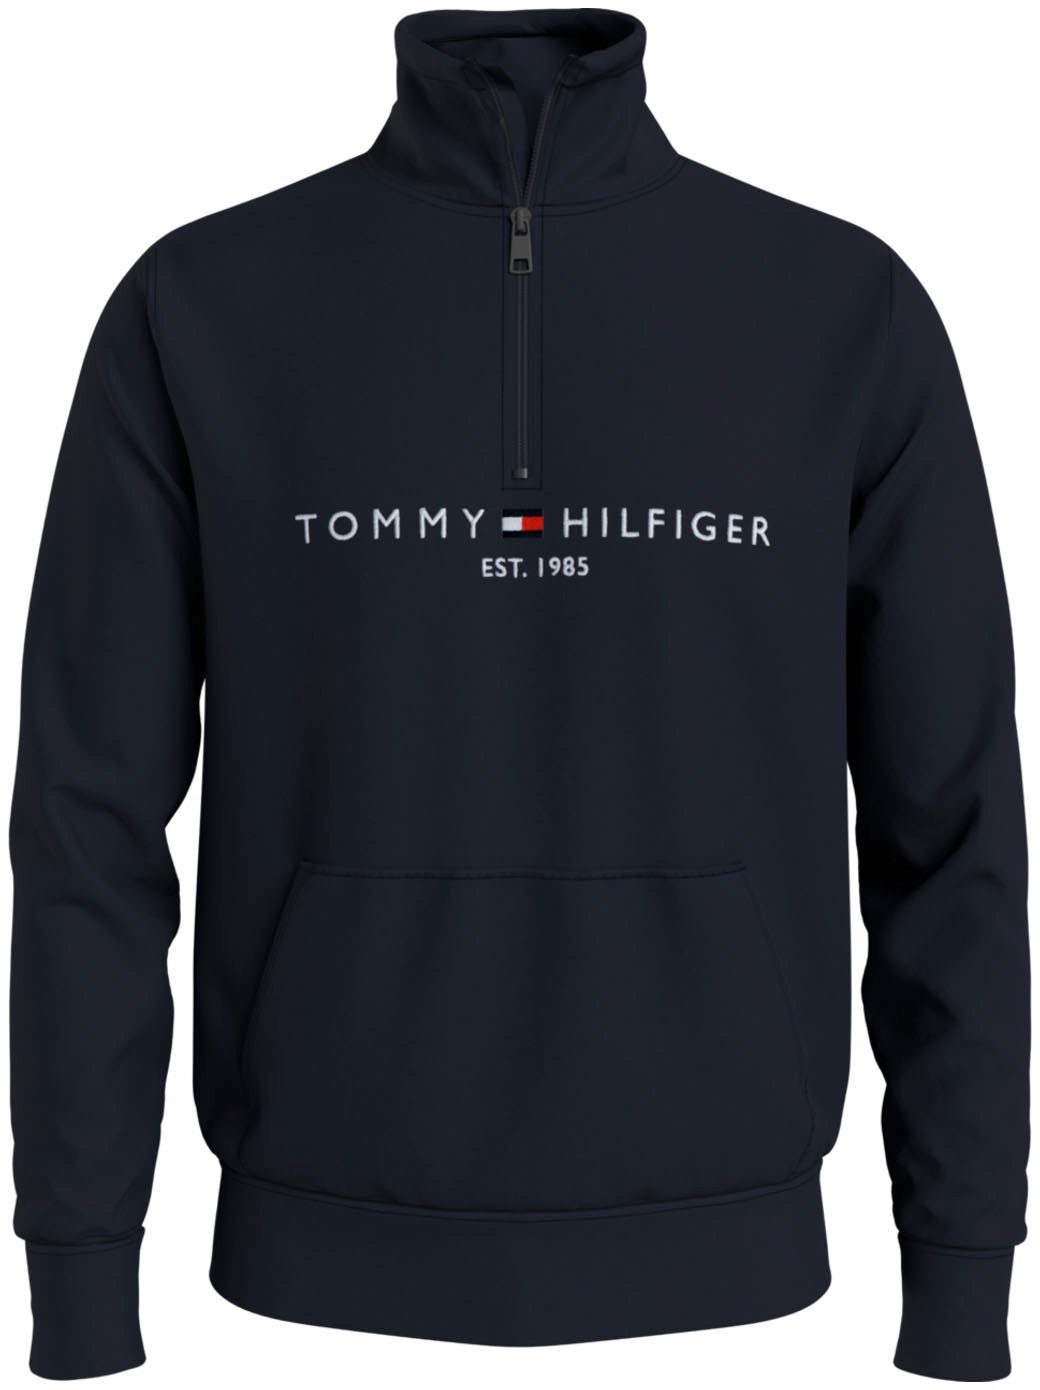 Tommy Hilfiger Pullover Herren online kaufen | OTTO